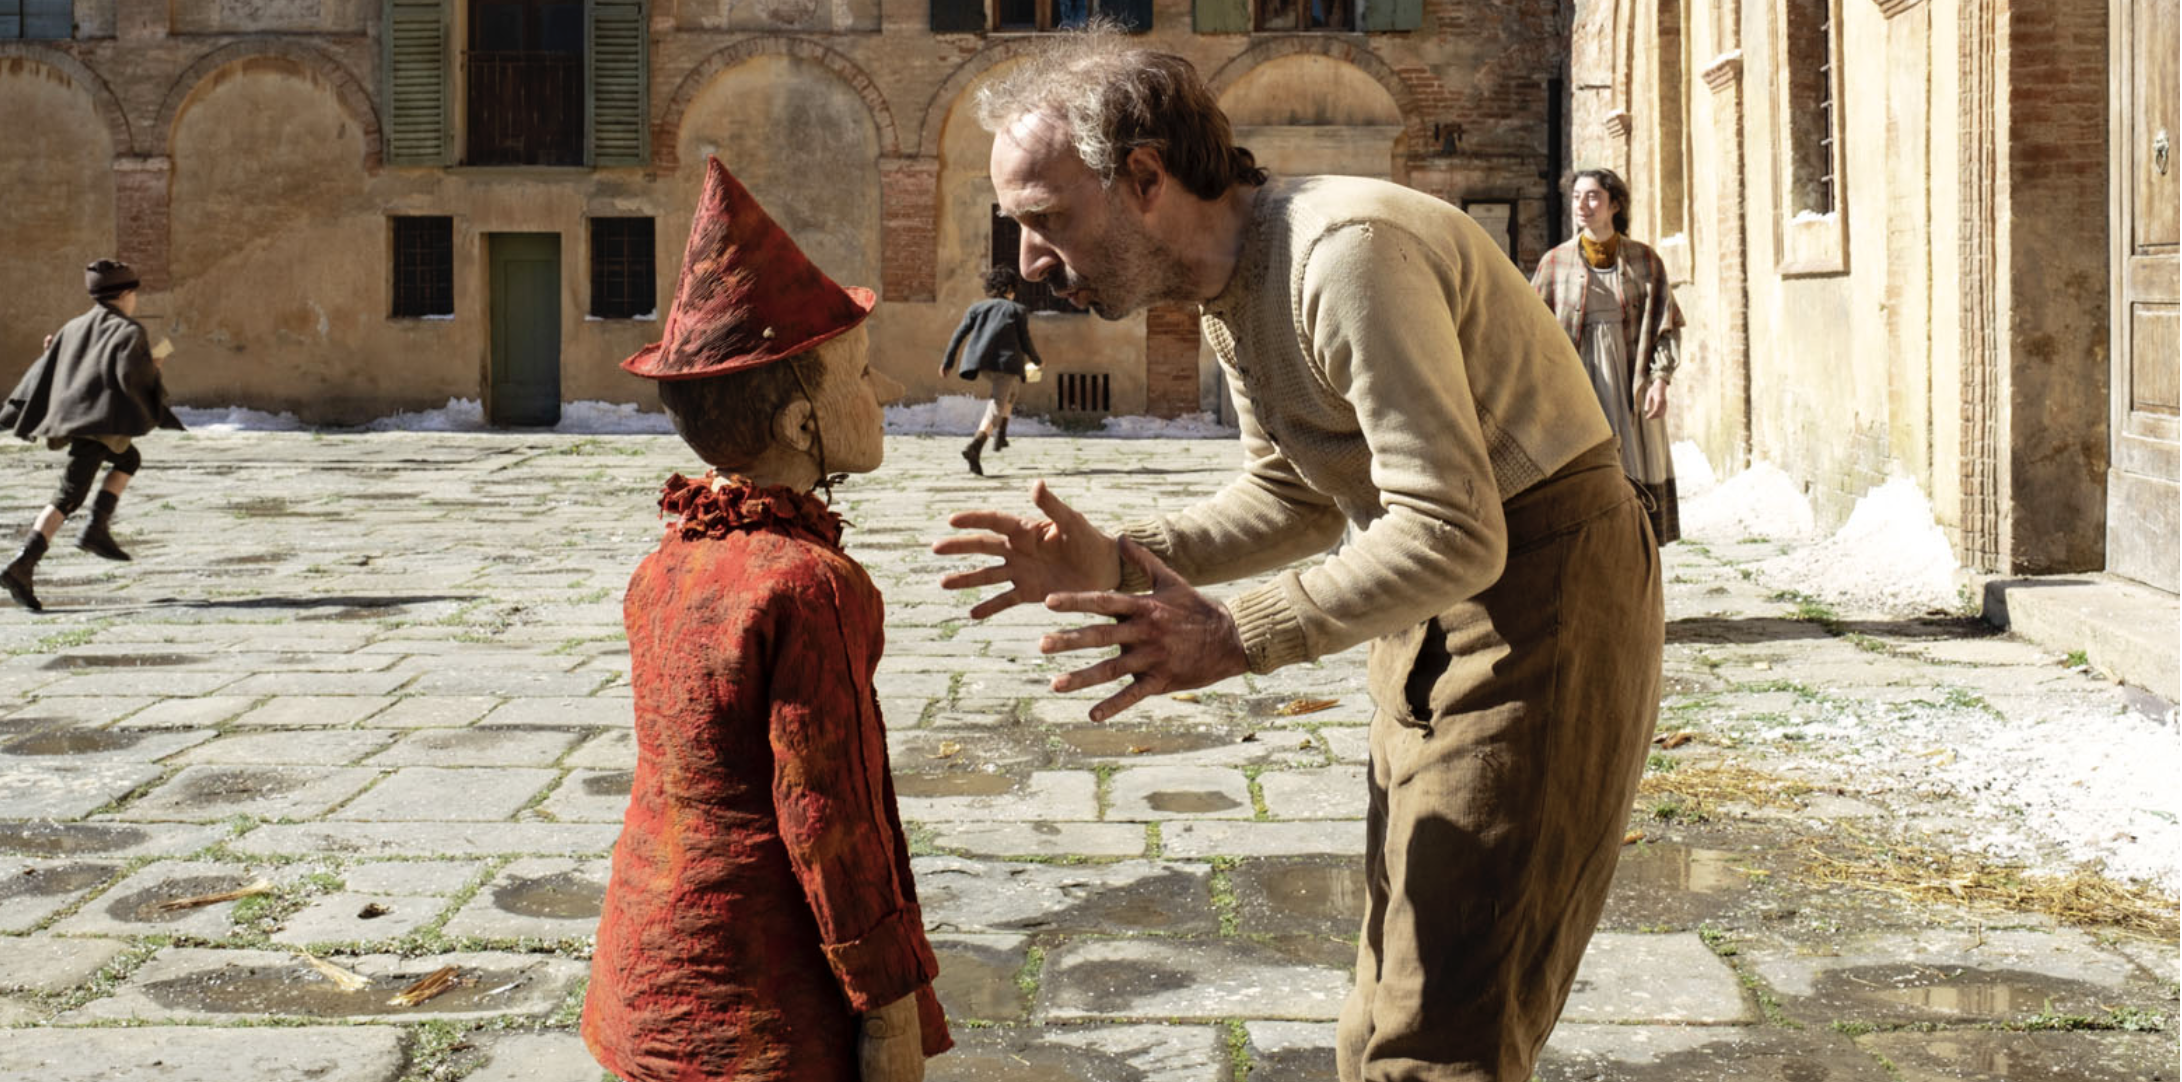 Pinocchio : le film de Matteo Garrone finalement sur Prime Video en France